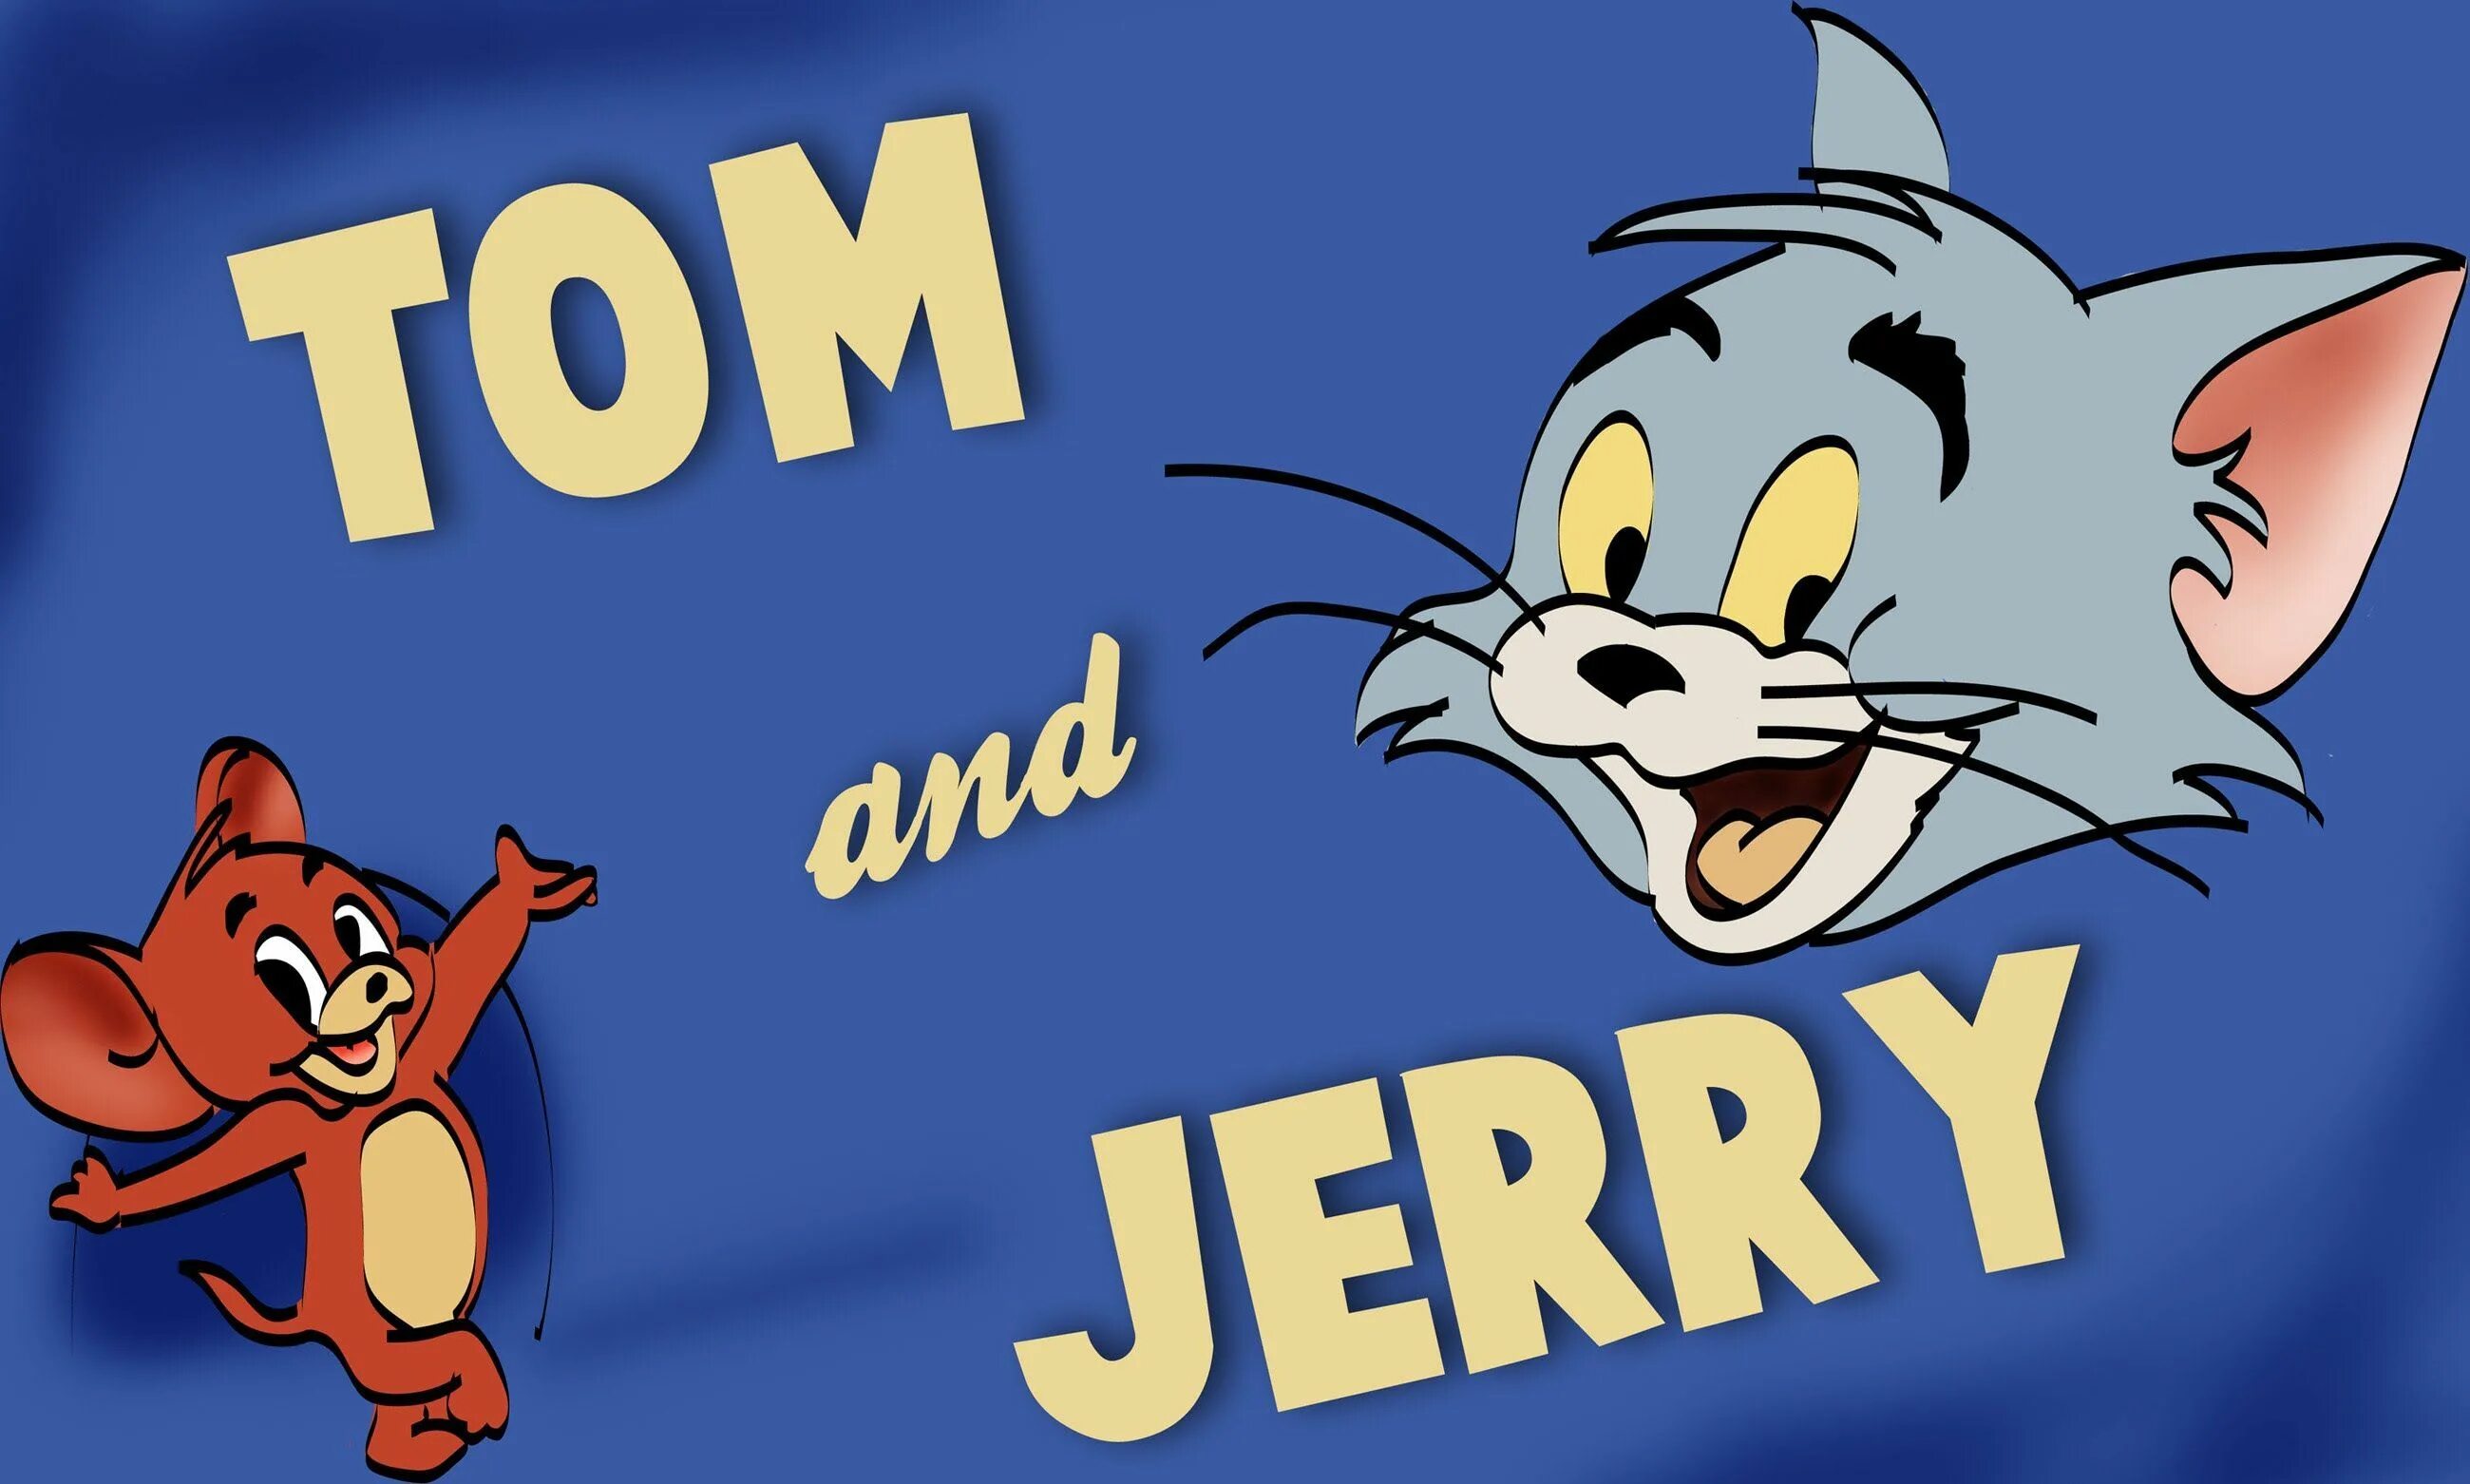 Tom and Jerry. Том и Джерри обложка мультфильма. NJV B LKTHB. Том и Джерри картинки. Как на английском будет тома